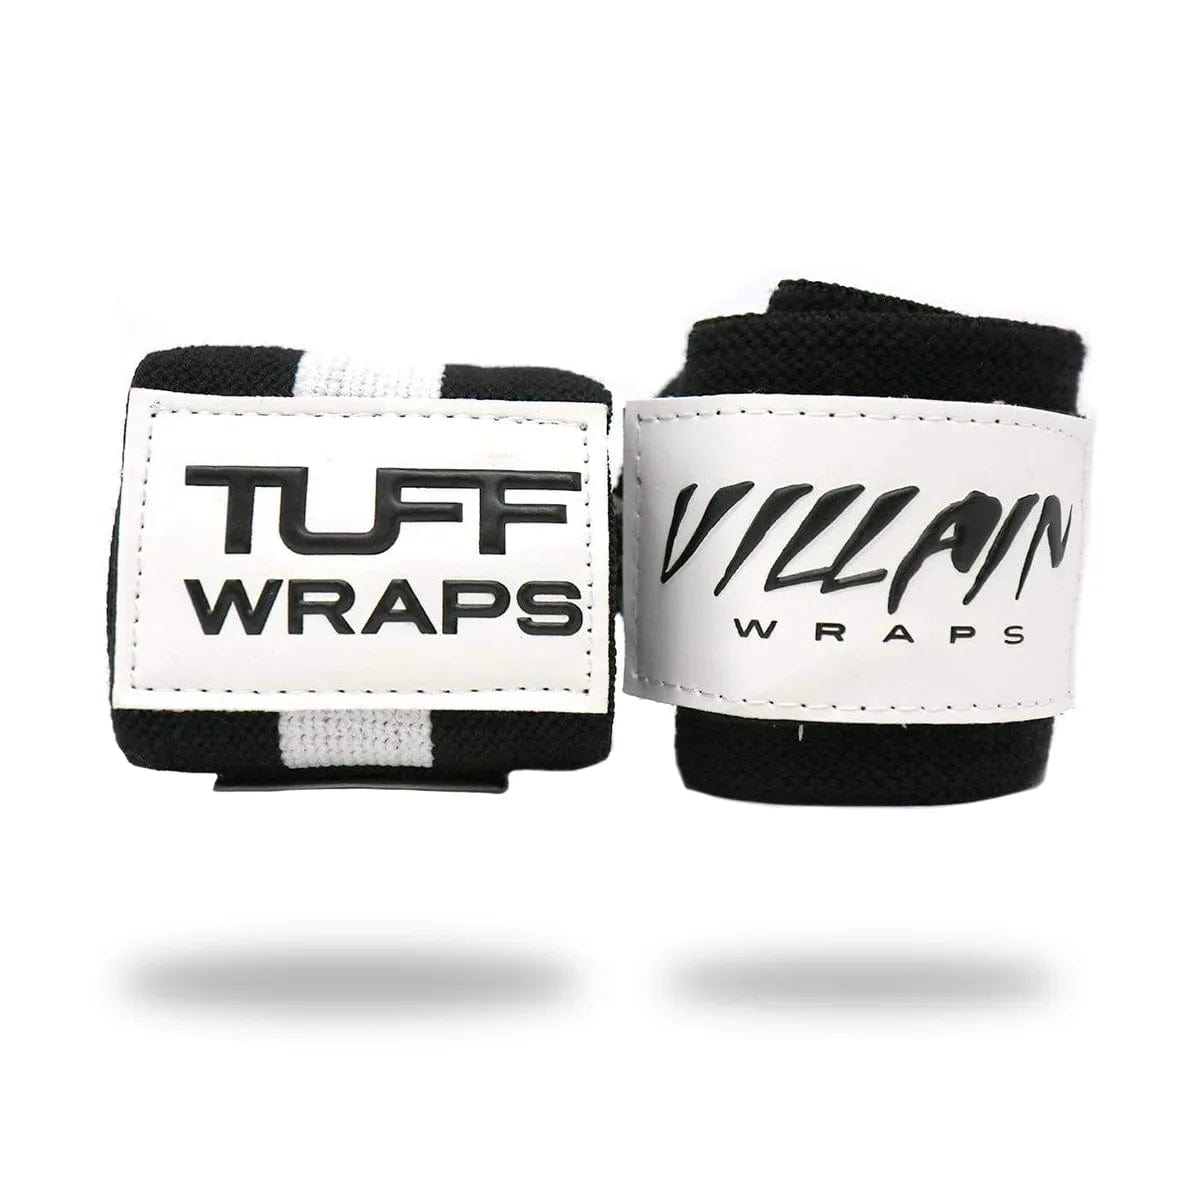 24" Villain Wrist Wraps - Black & White TuffWraps.com